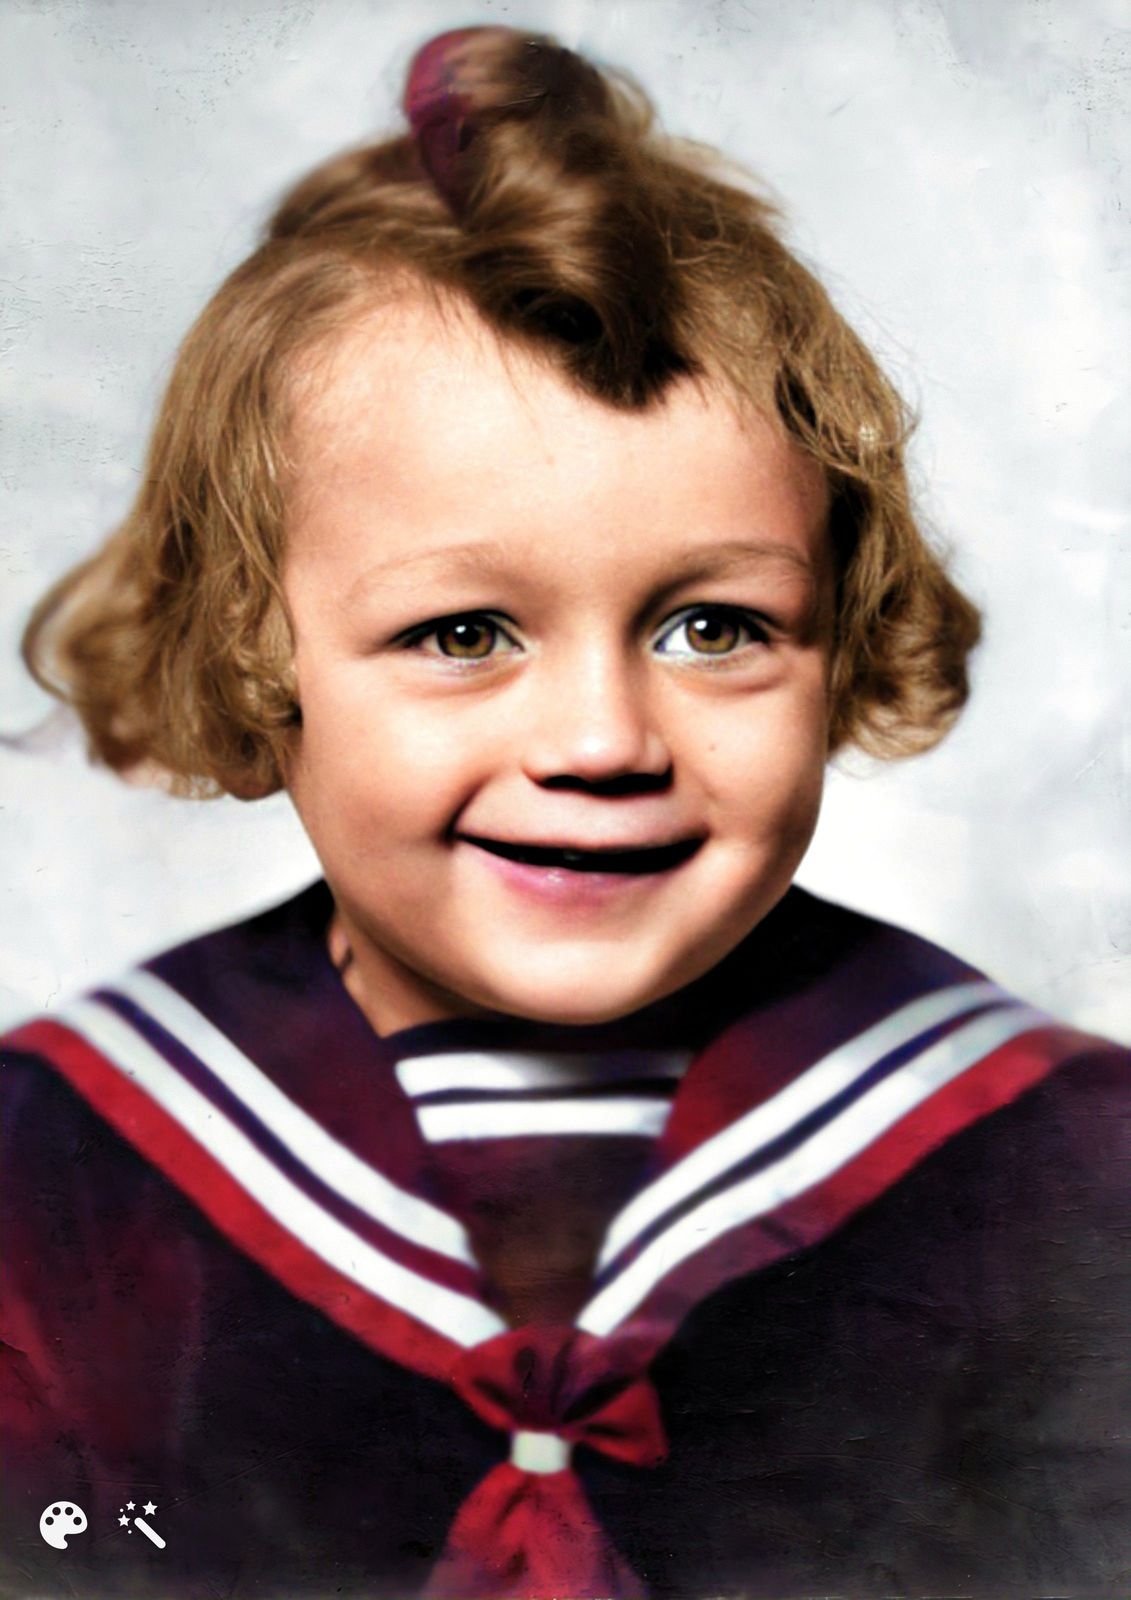 1942 Ve čtyřech letech Krampola považovali za holčičku.